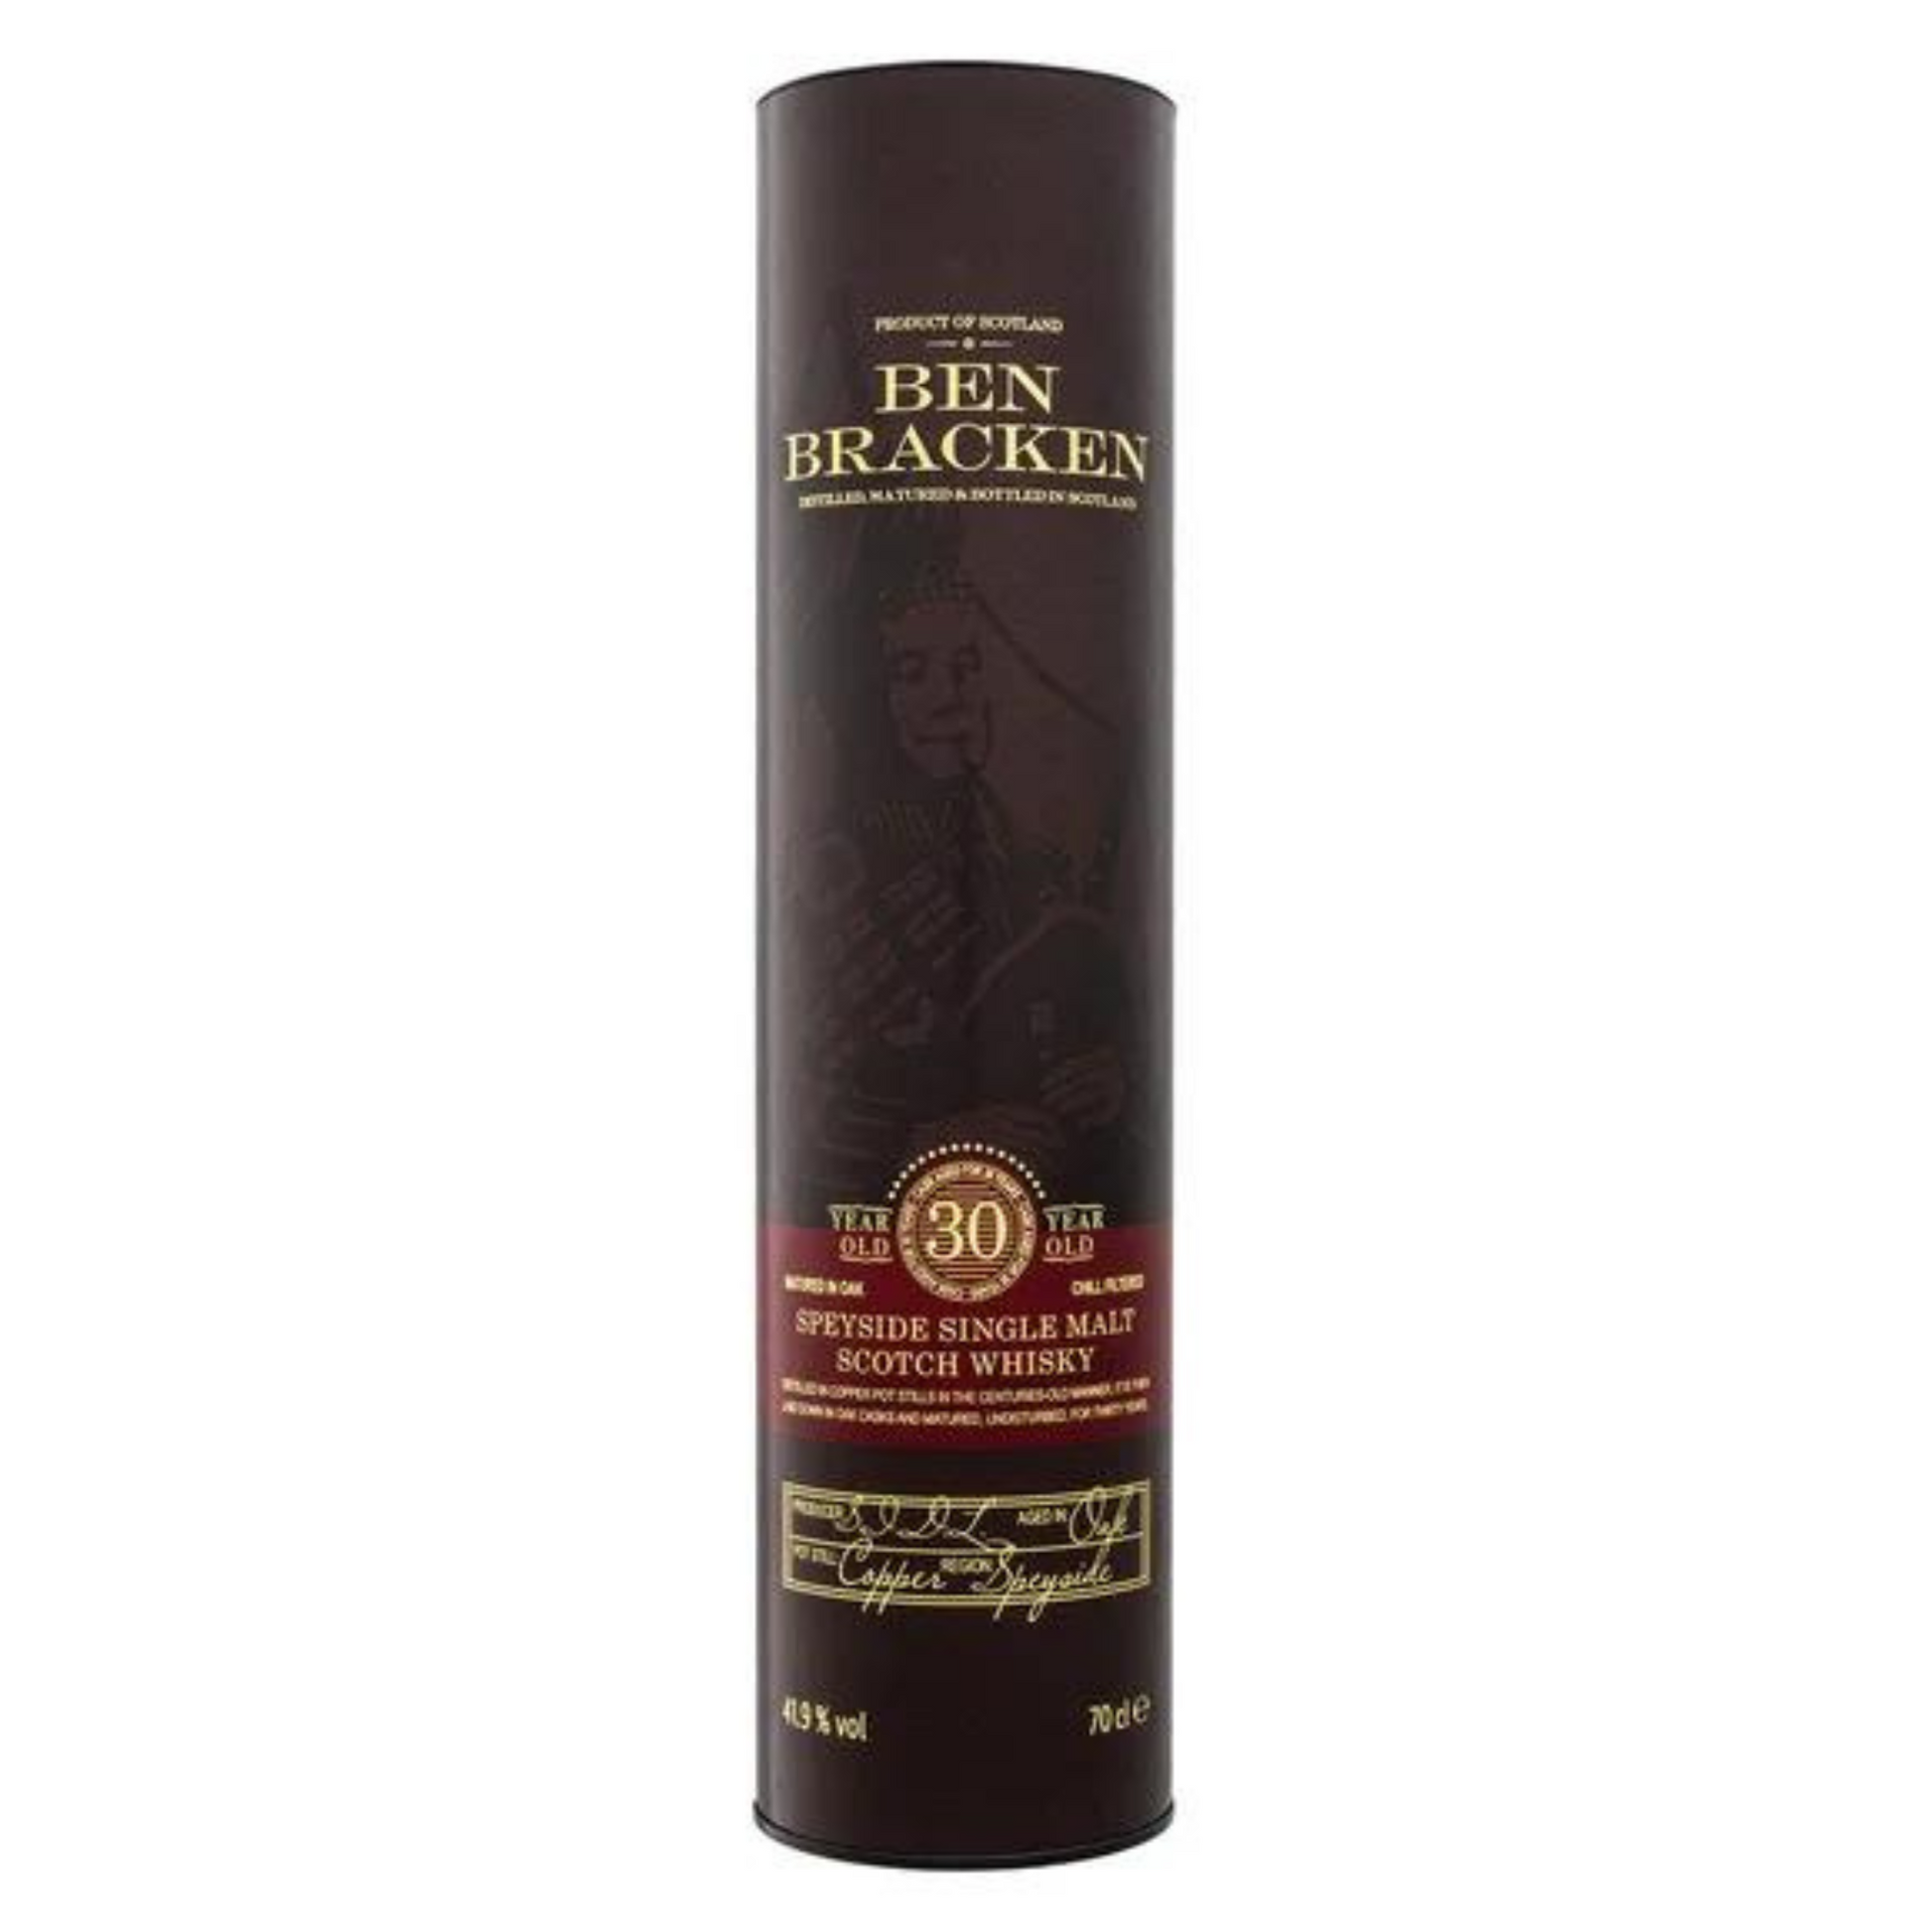 Ben Bracken Speyside Single Malt 30 Spirituosen - Whisky Die Scotch & Jahre Whisky Schnecke – vol 0,7L 41,9